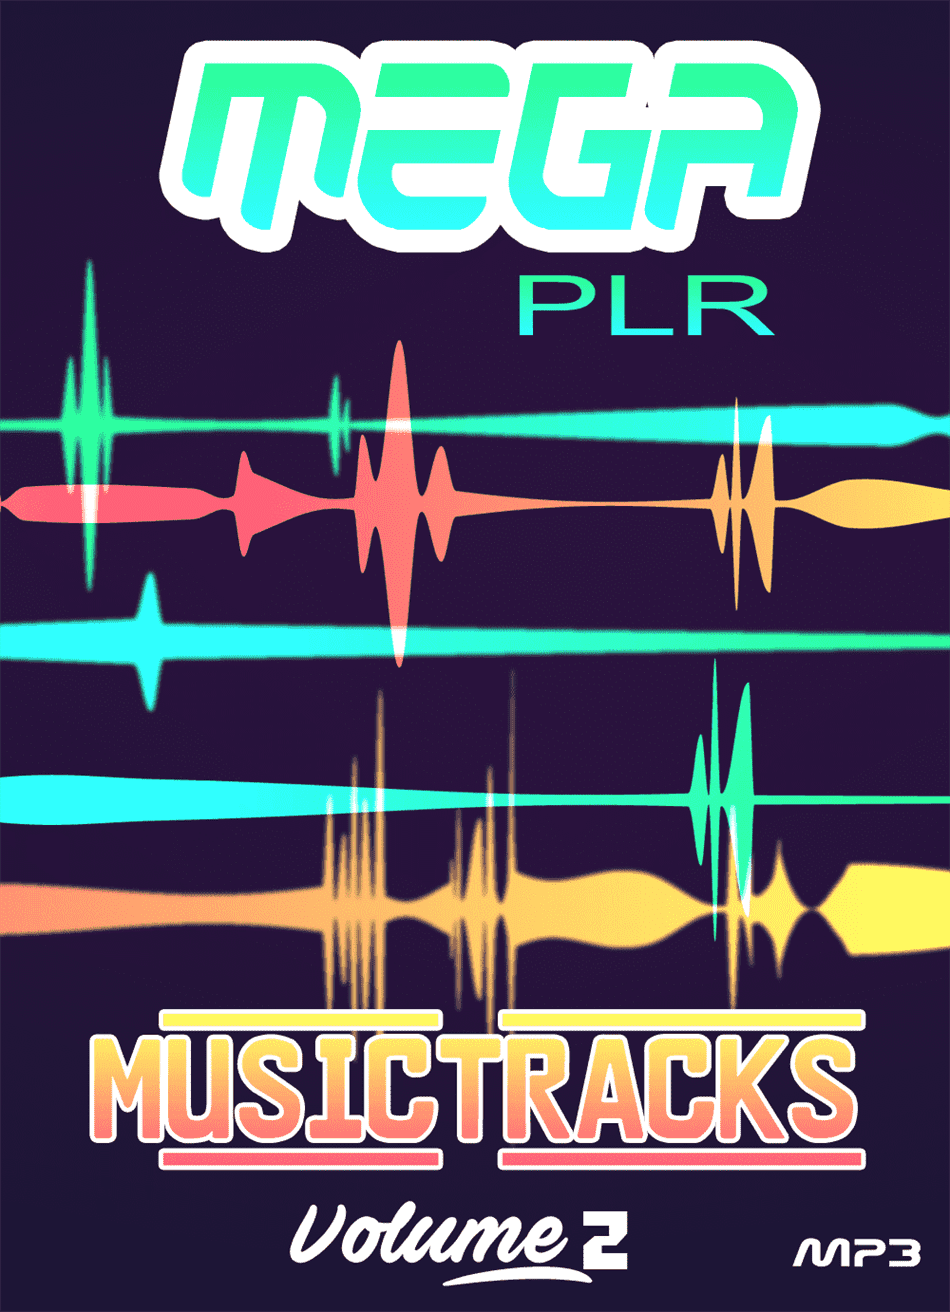 Mega PLR Music Tracks V2